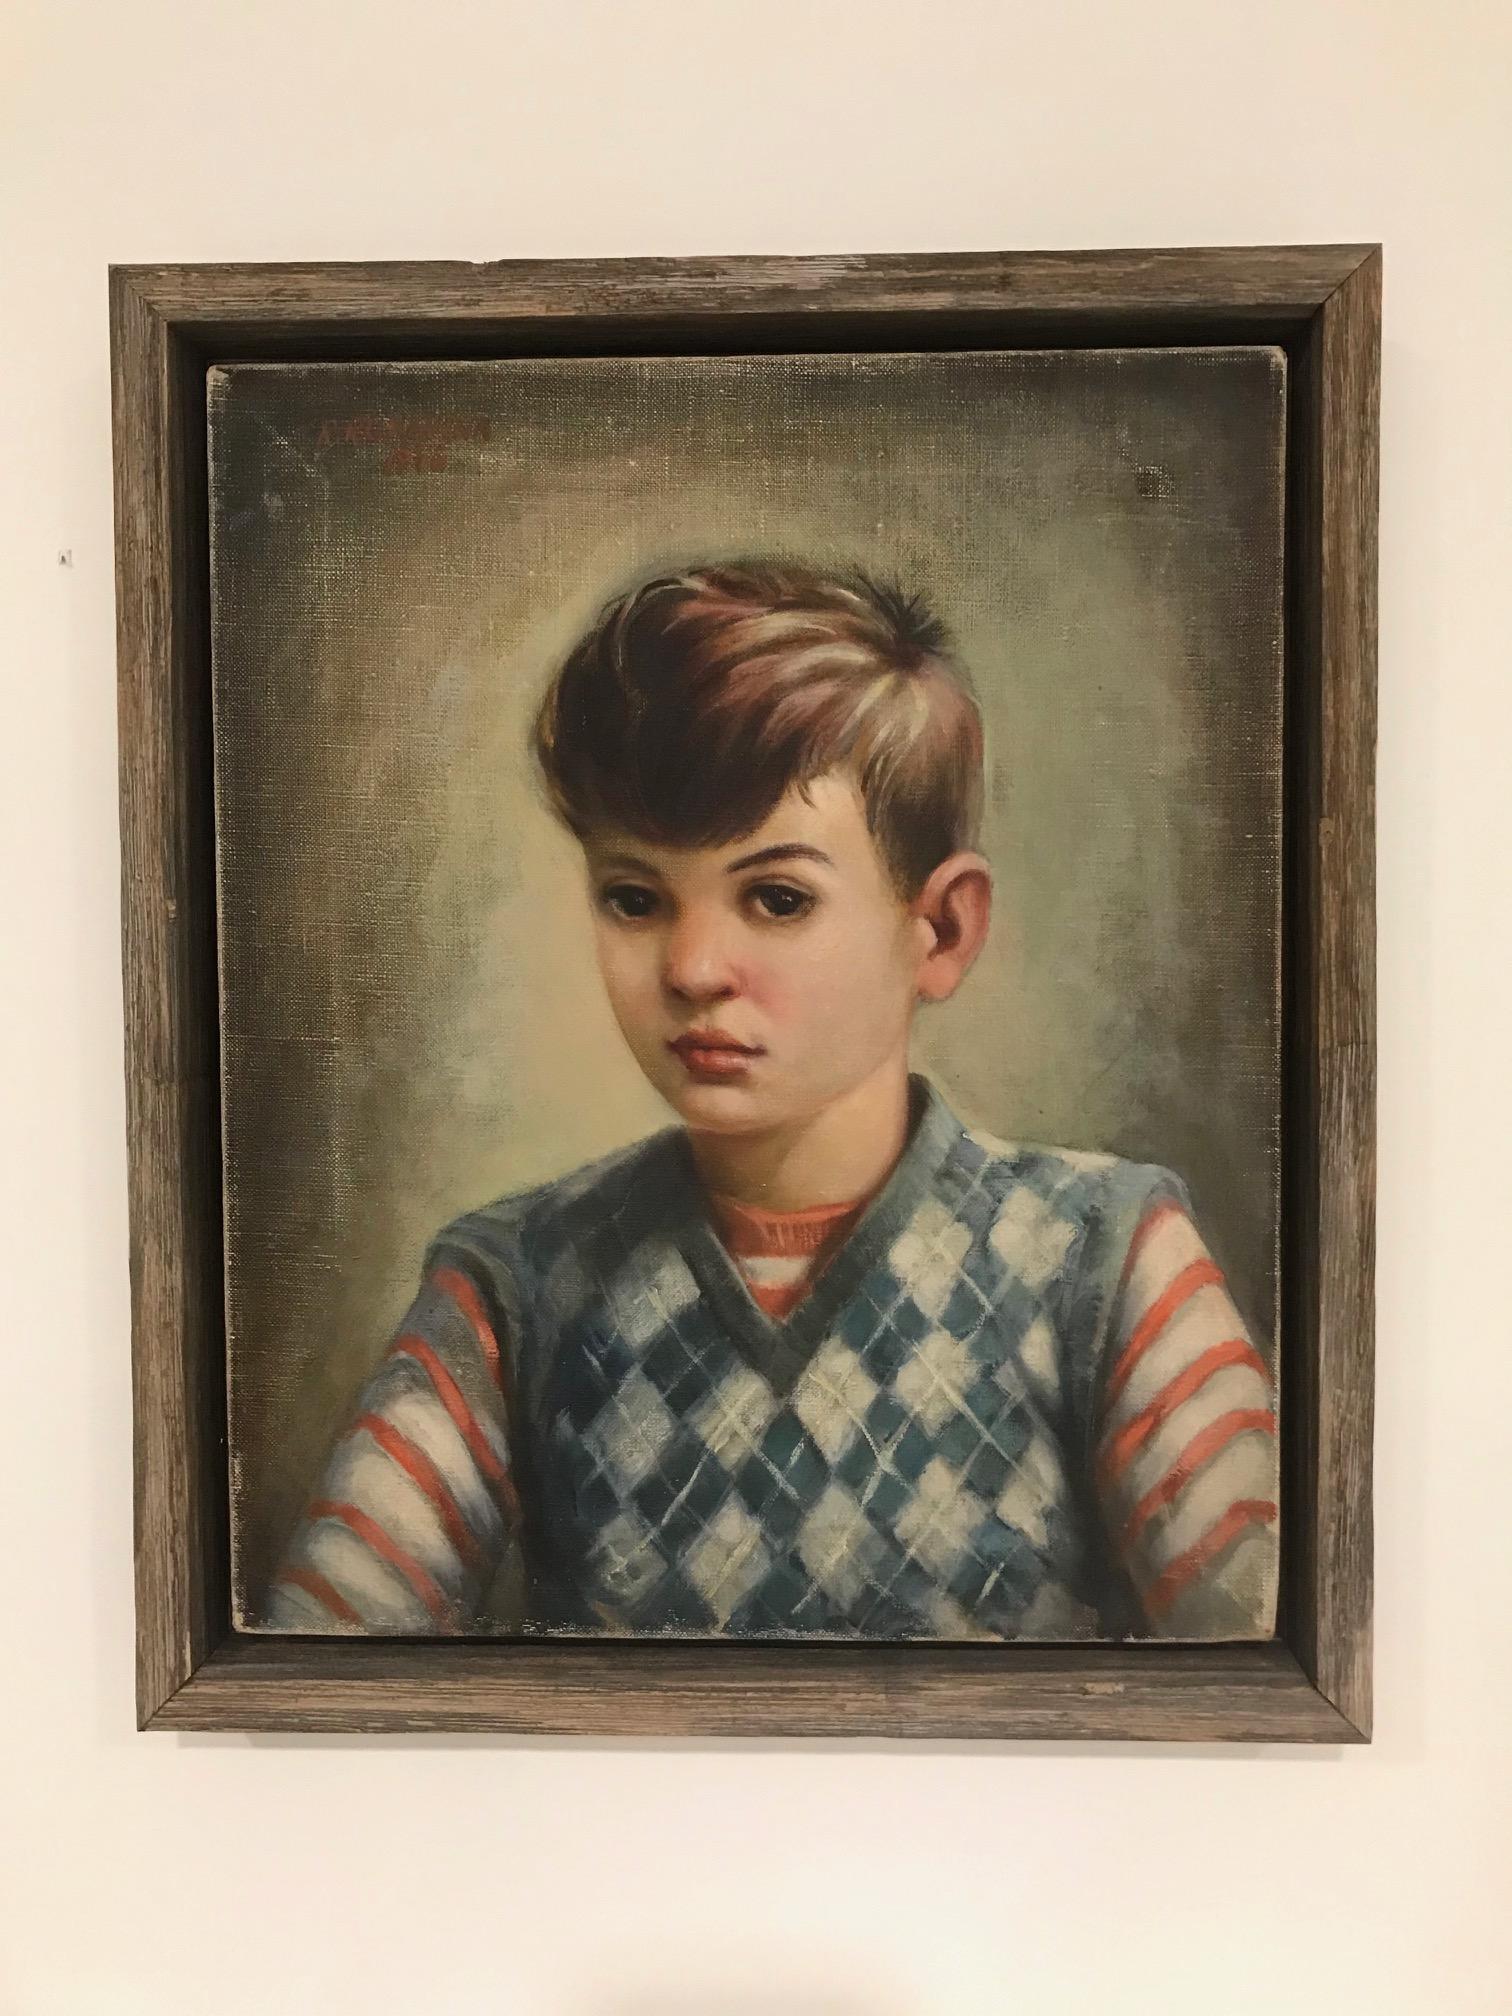 Vintage-Porträt eines Jungen, der ein gestreiftes rotes Hemd und einen blauen Pullover mit Argyle-Muster trägt. Öl auf Leinwand des in den Vereinigten Staaten lebenden Künstlers Robert Rukavina (1914-1977), der für seine realistischen Figuren- und